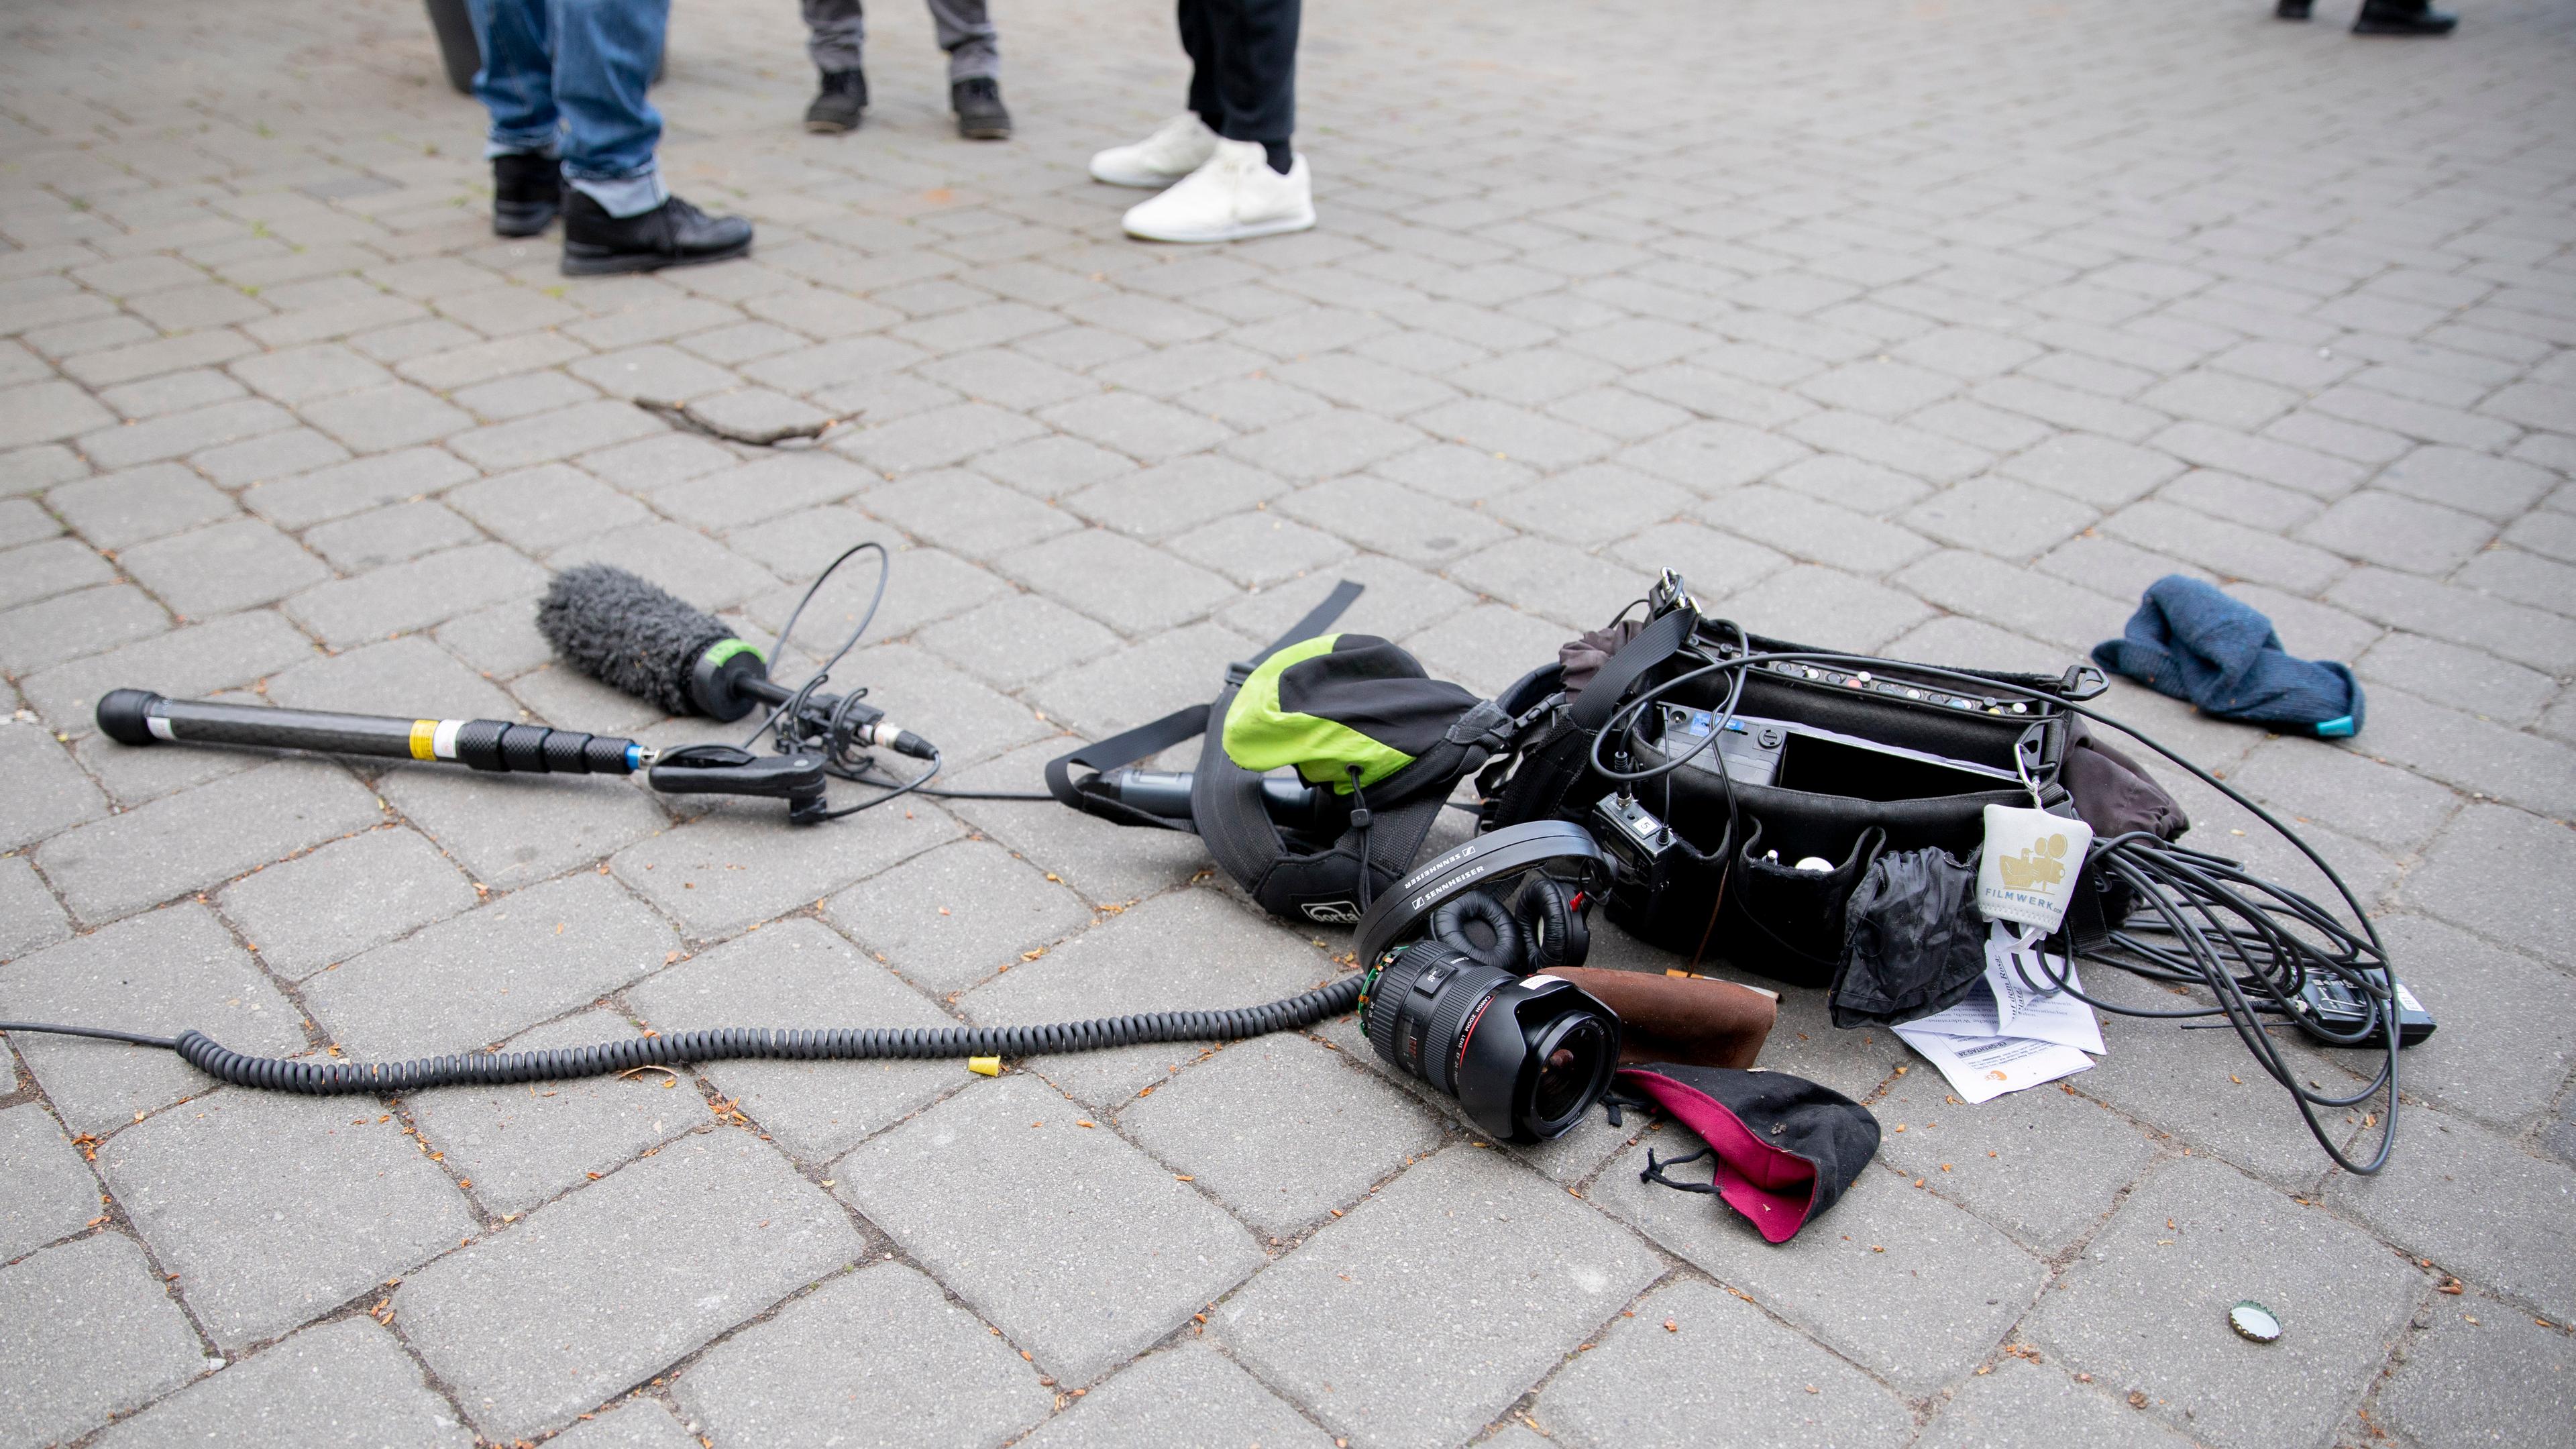 Berlin: Die Ausrüstung eines Kamerateams liegt nach einem Übergriff zwischen Alexanderplatz und Hackescher Markt auf dem Boden. Archivbild